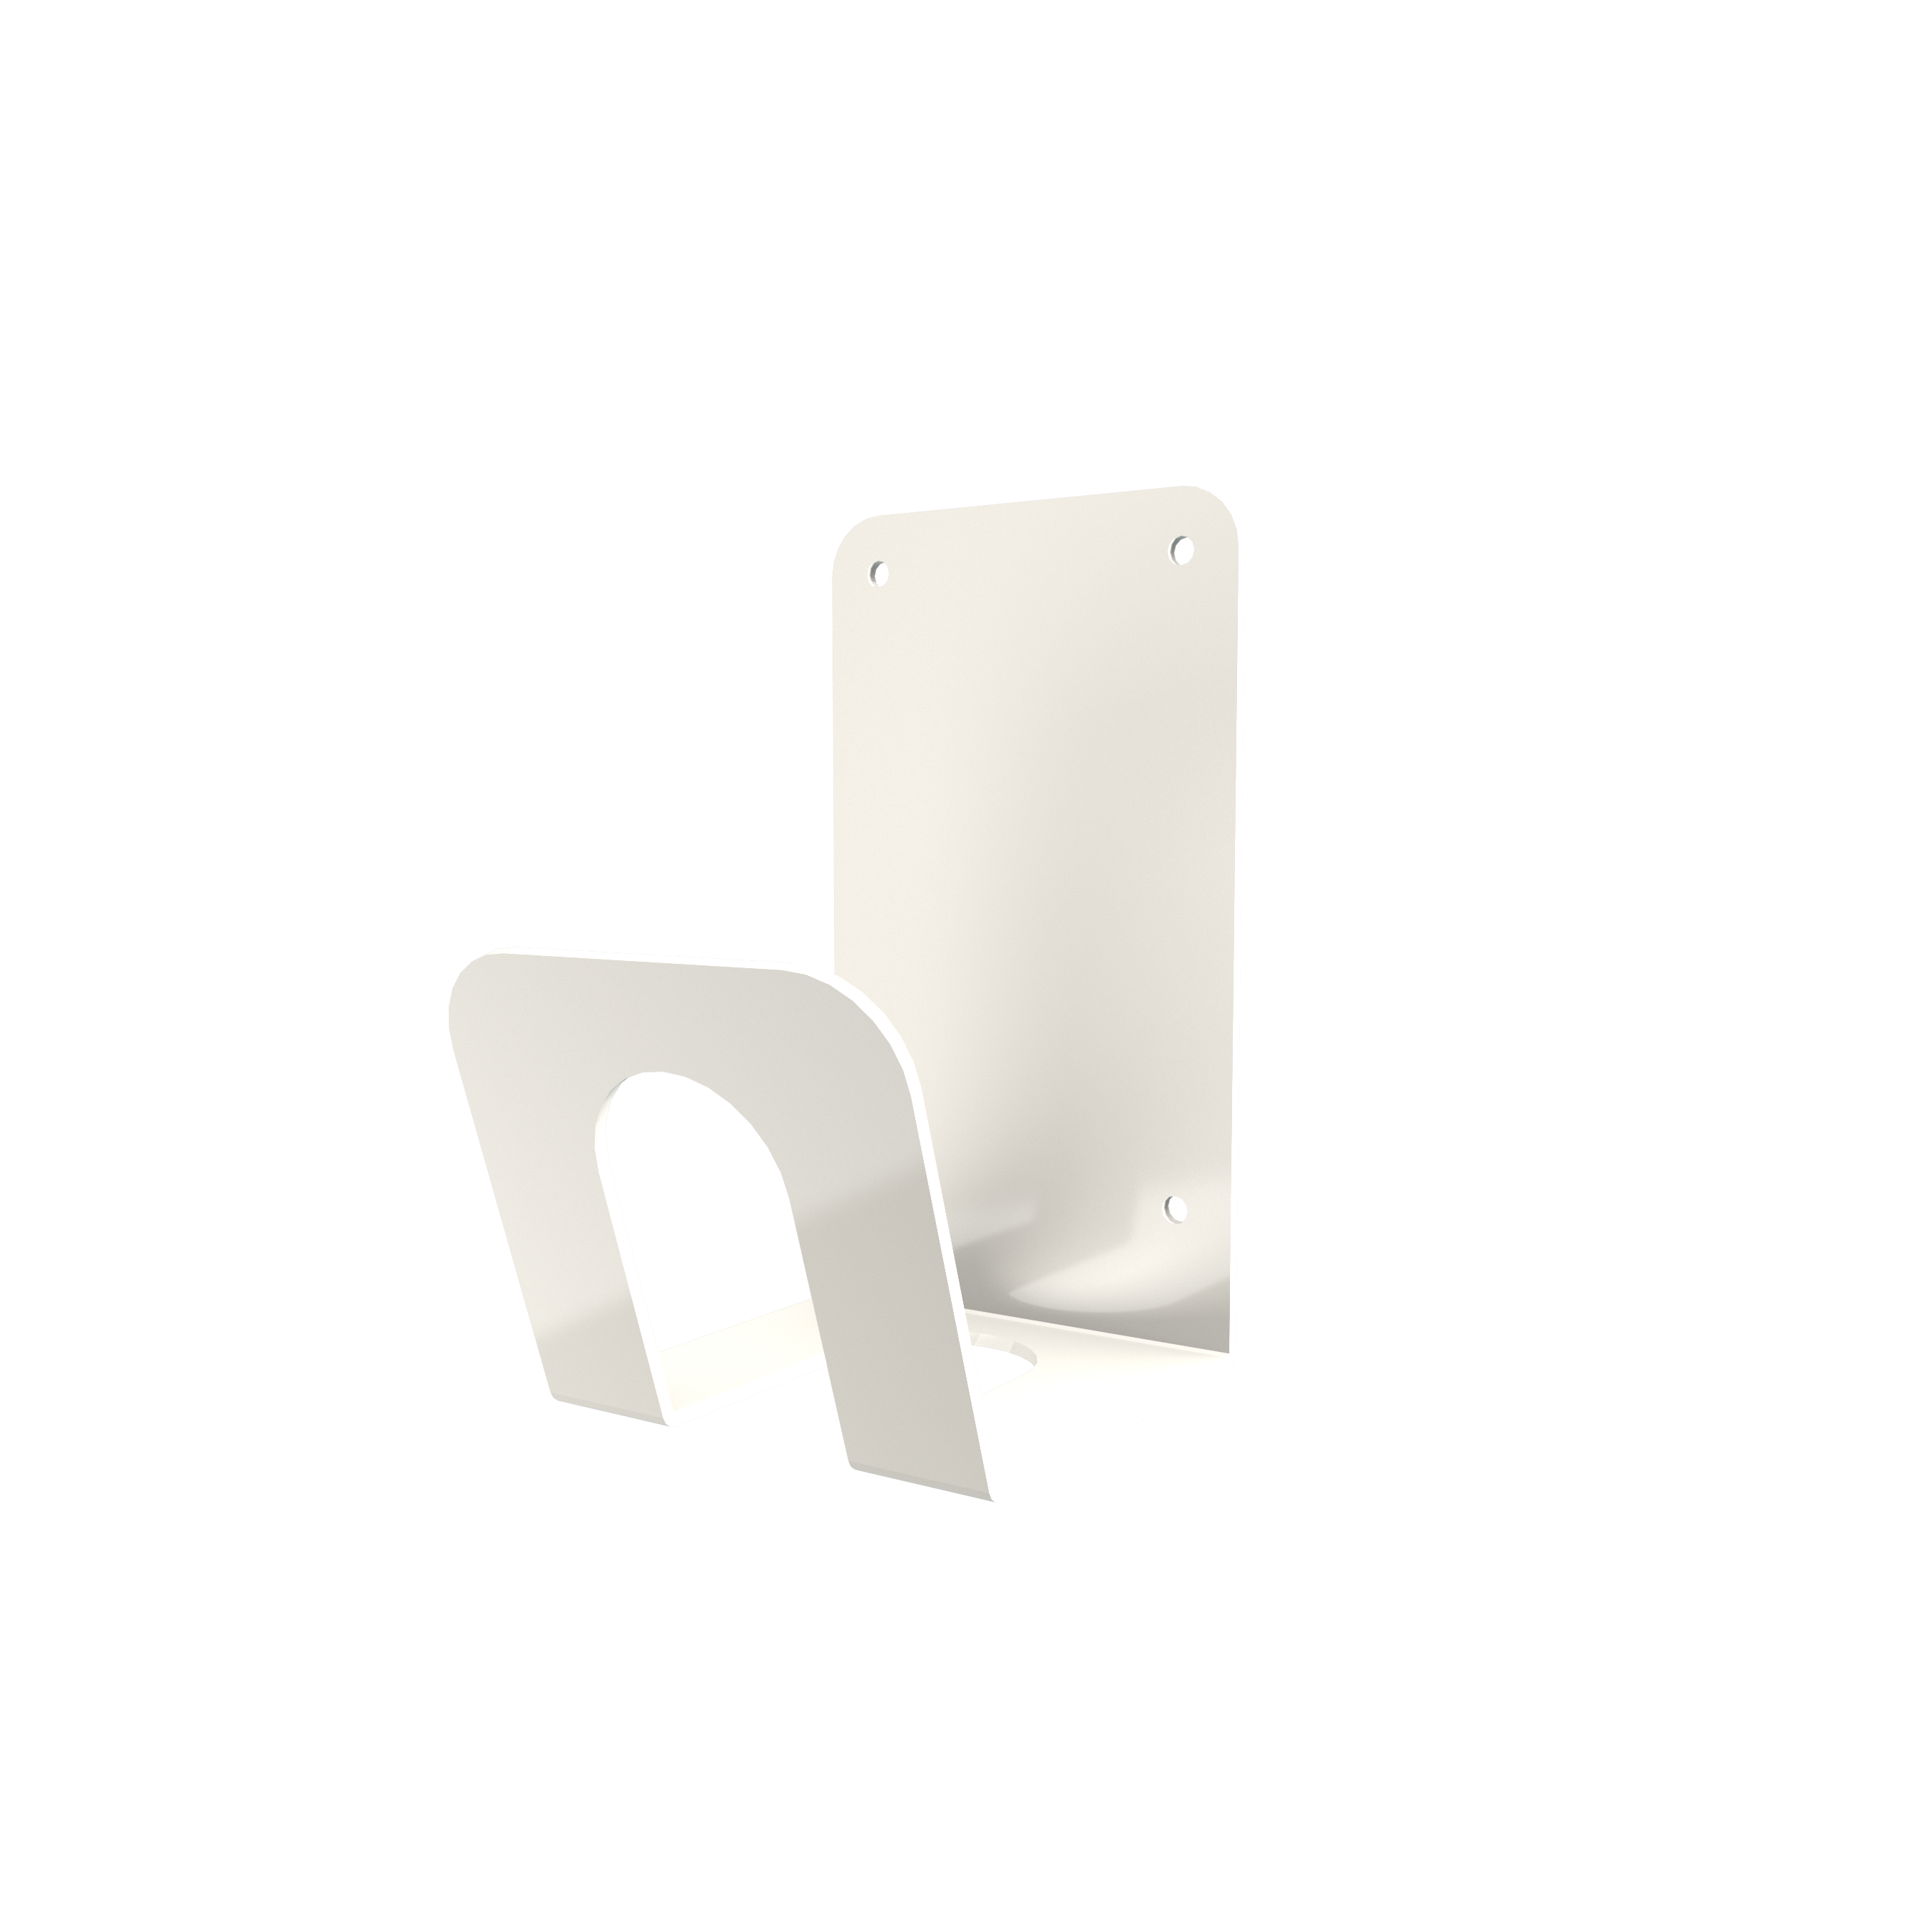 a-TroniX Wandhalterung für Wallbox Ladekabel aus Edelstahl in weiß